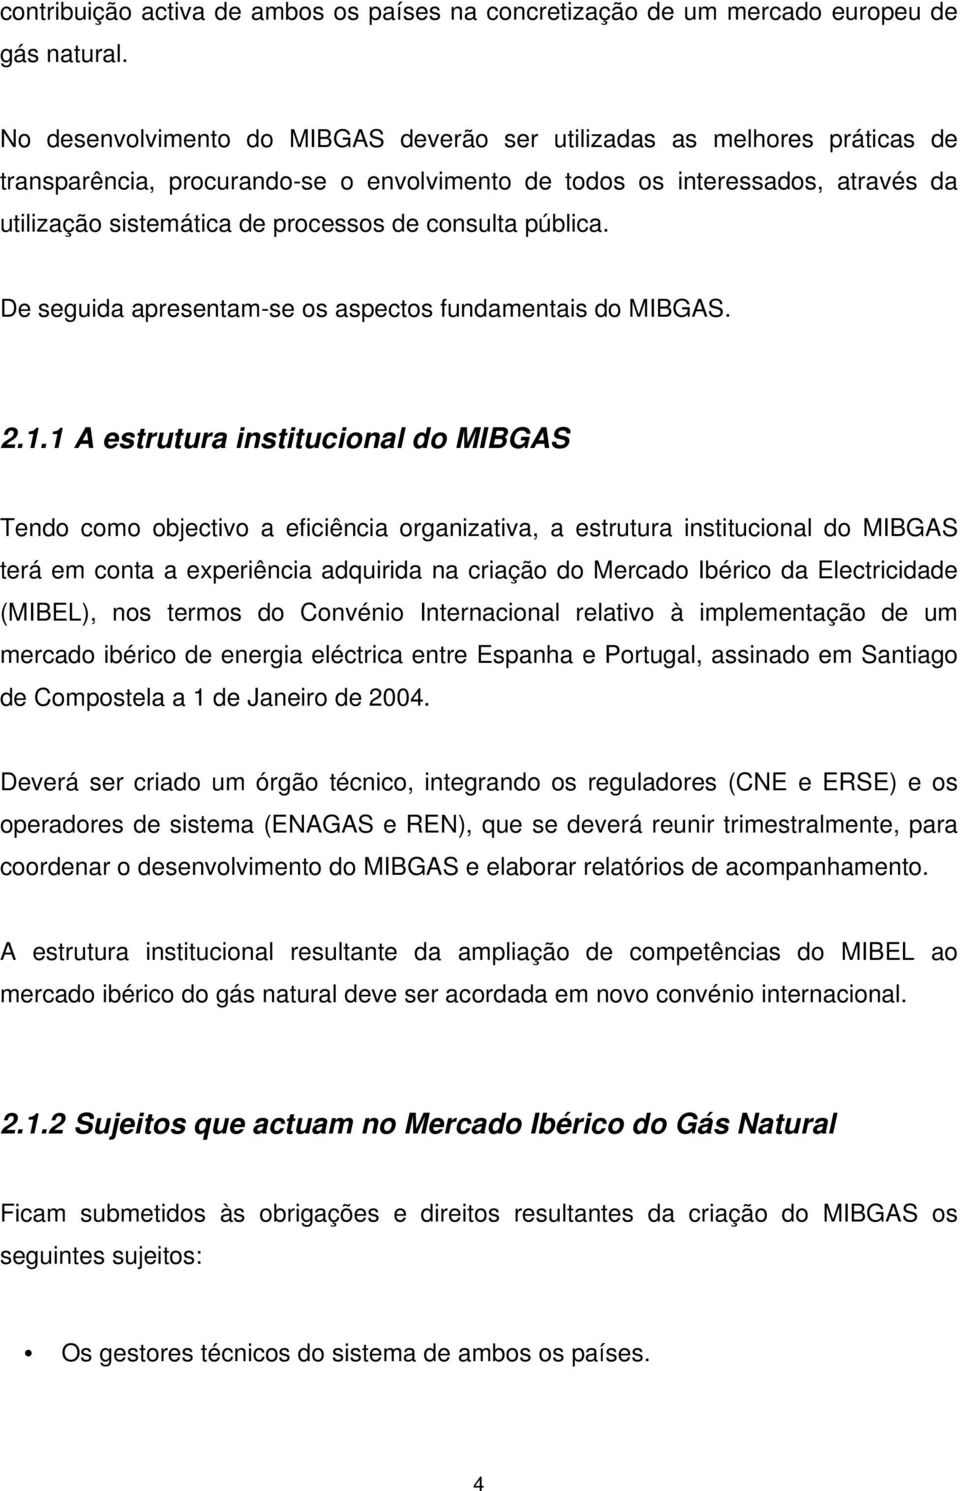 consulta pública. De seguida apresentam-se os aspectos fundamentais do MIBGAS. 2.1.